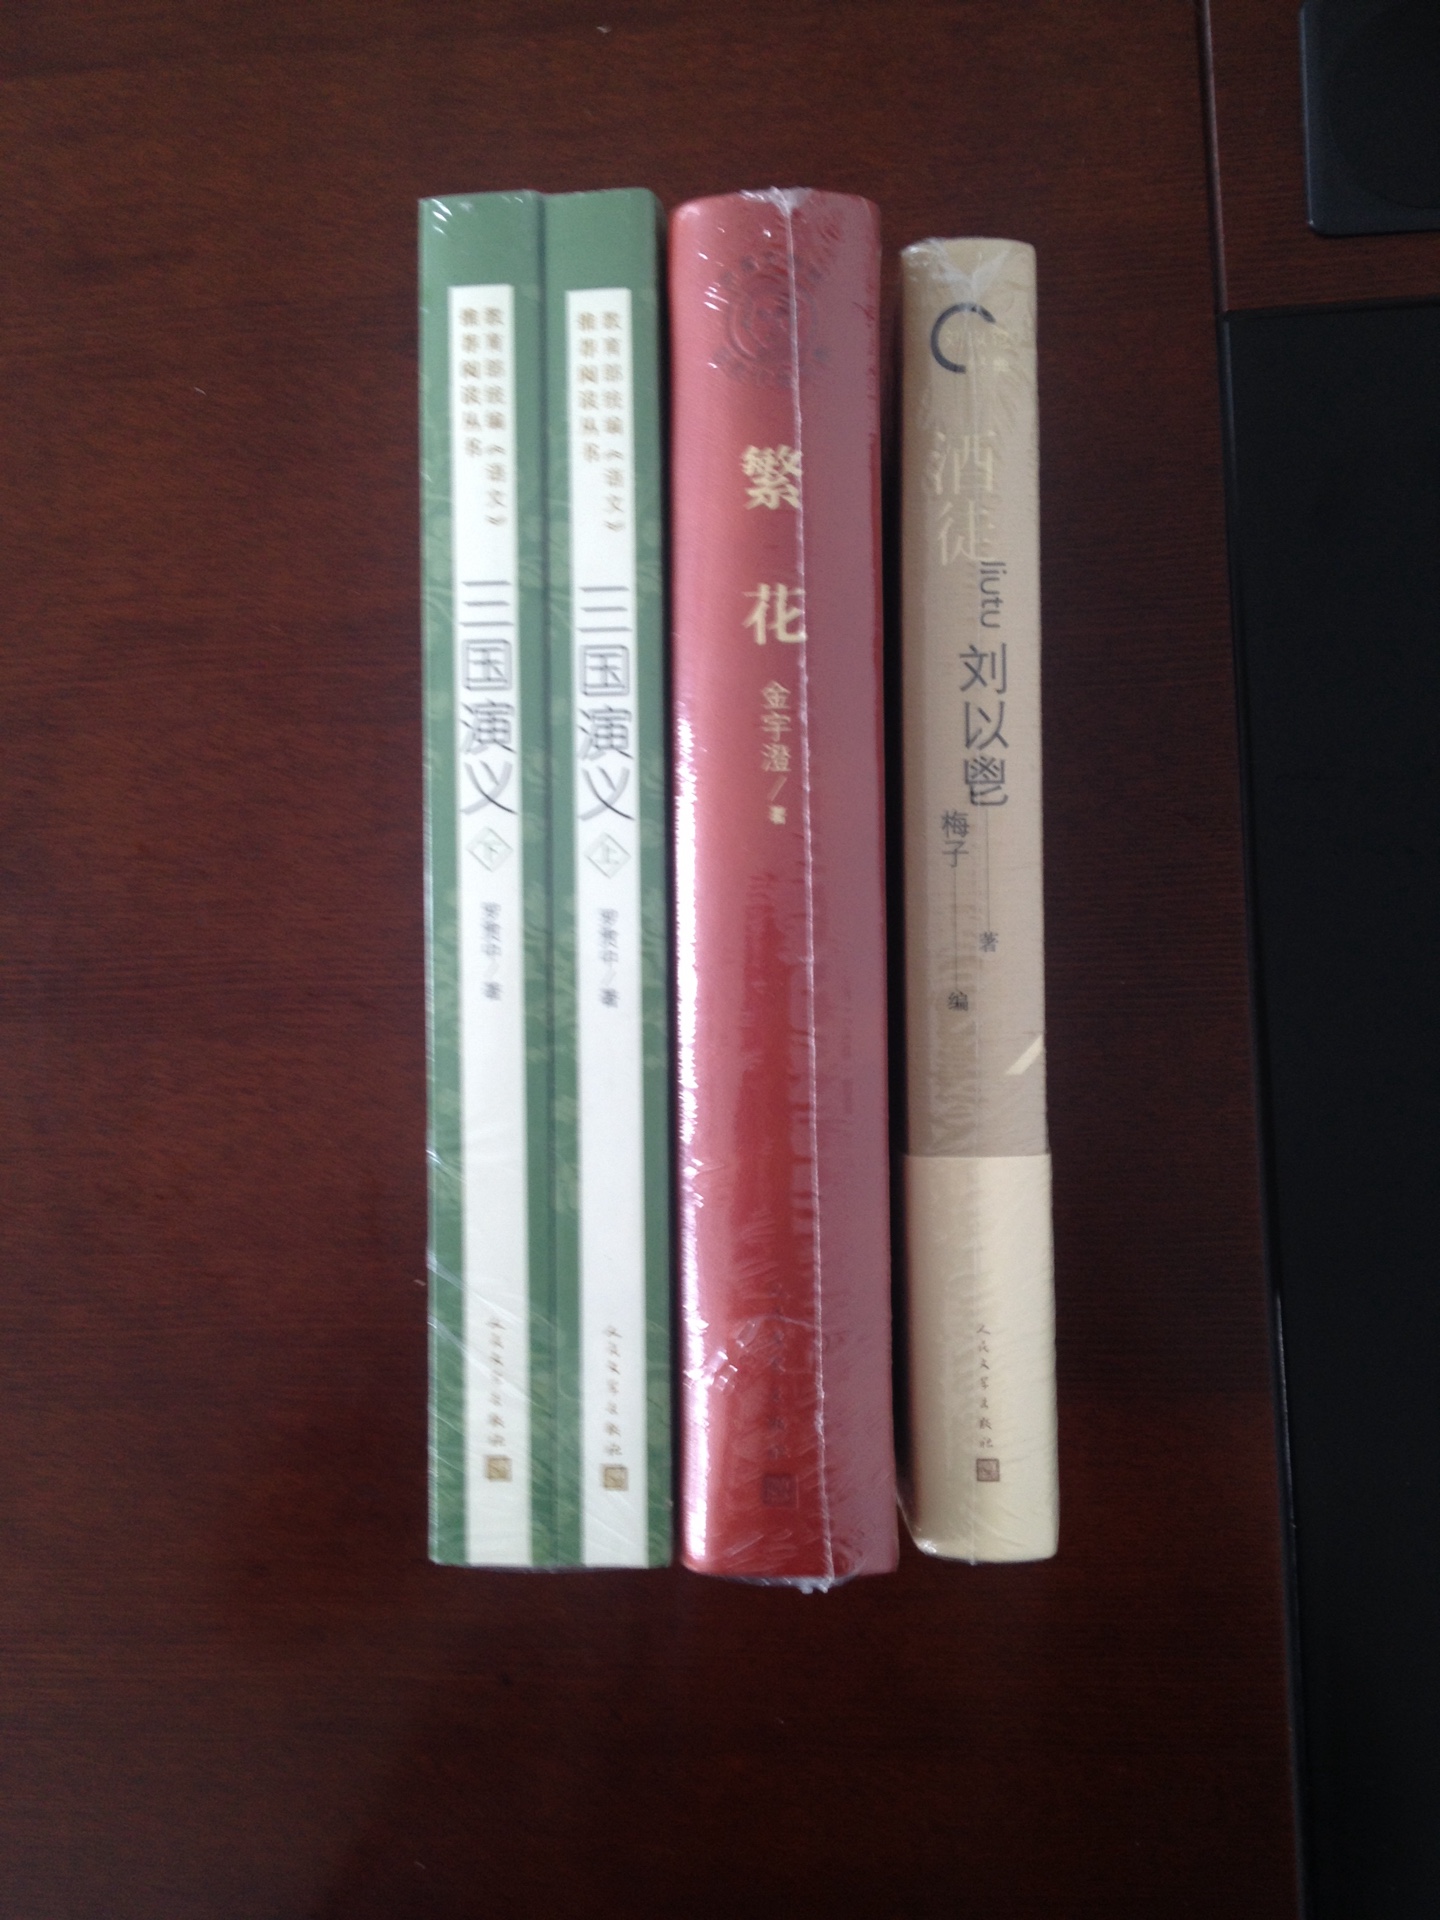 ??《酒徒》、《对倒》、《寺内》都是香港作家刘以鬯经典作品。在内地新世纪之初出版的百年百种图书的书目中就有，可惜的是当初因为版权问题而没有出版，一直无缘得见。今趁618之际购入，满足了多年的心愿。精装图书装帧朴素、典雅，纸张不错，还有多篇介绍文章，对深入了解这部作品和刘以鬯先生很有帮助的。这是香港文学一代宗师荣膺终身成就奖刘以鬯的经典杰作，王家卫电影《2046》灵感来源，诗化意识流小说开山之作，现代文人小说高峰。《酒徒》创作于上世纪60年代初，被誉为“中国首部意识流小说”，入选“20世纪现代小说经典名著百强”。2004年引发香港导演王家卫拍摄电影《2046》。2011年由香港导演黄国兆拍摄成电影。